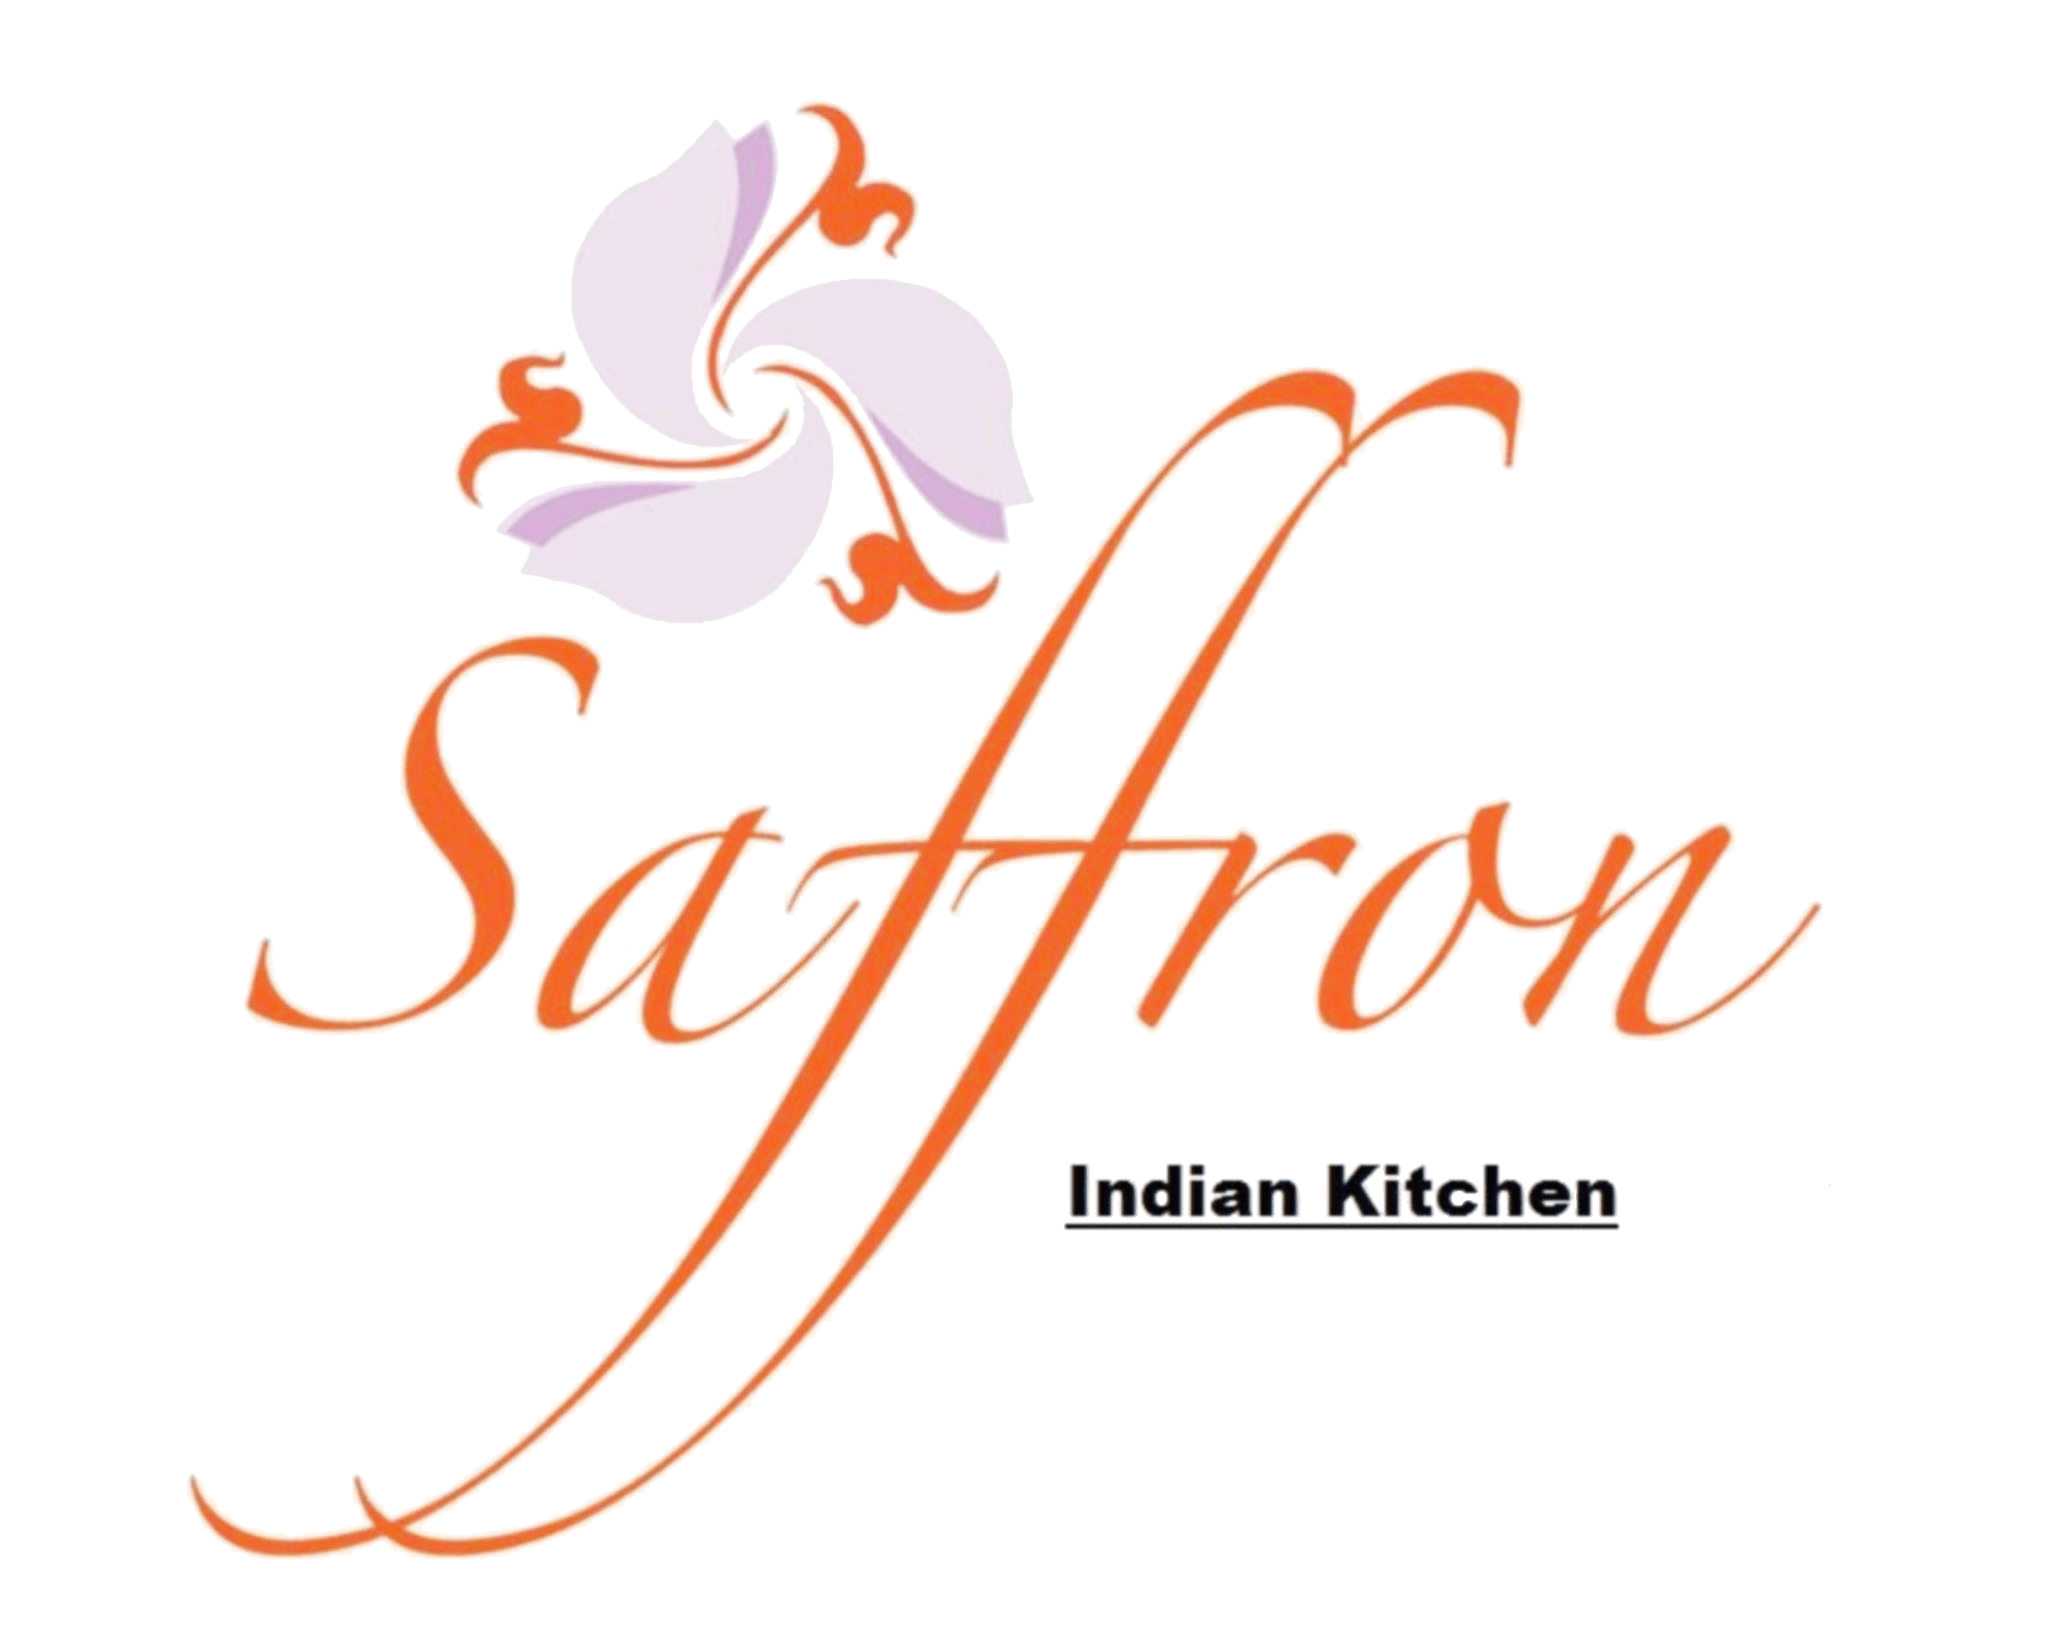 Saffron Indian Kitchen